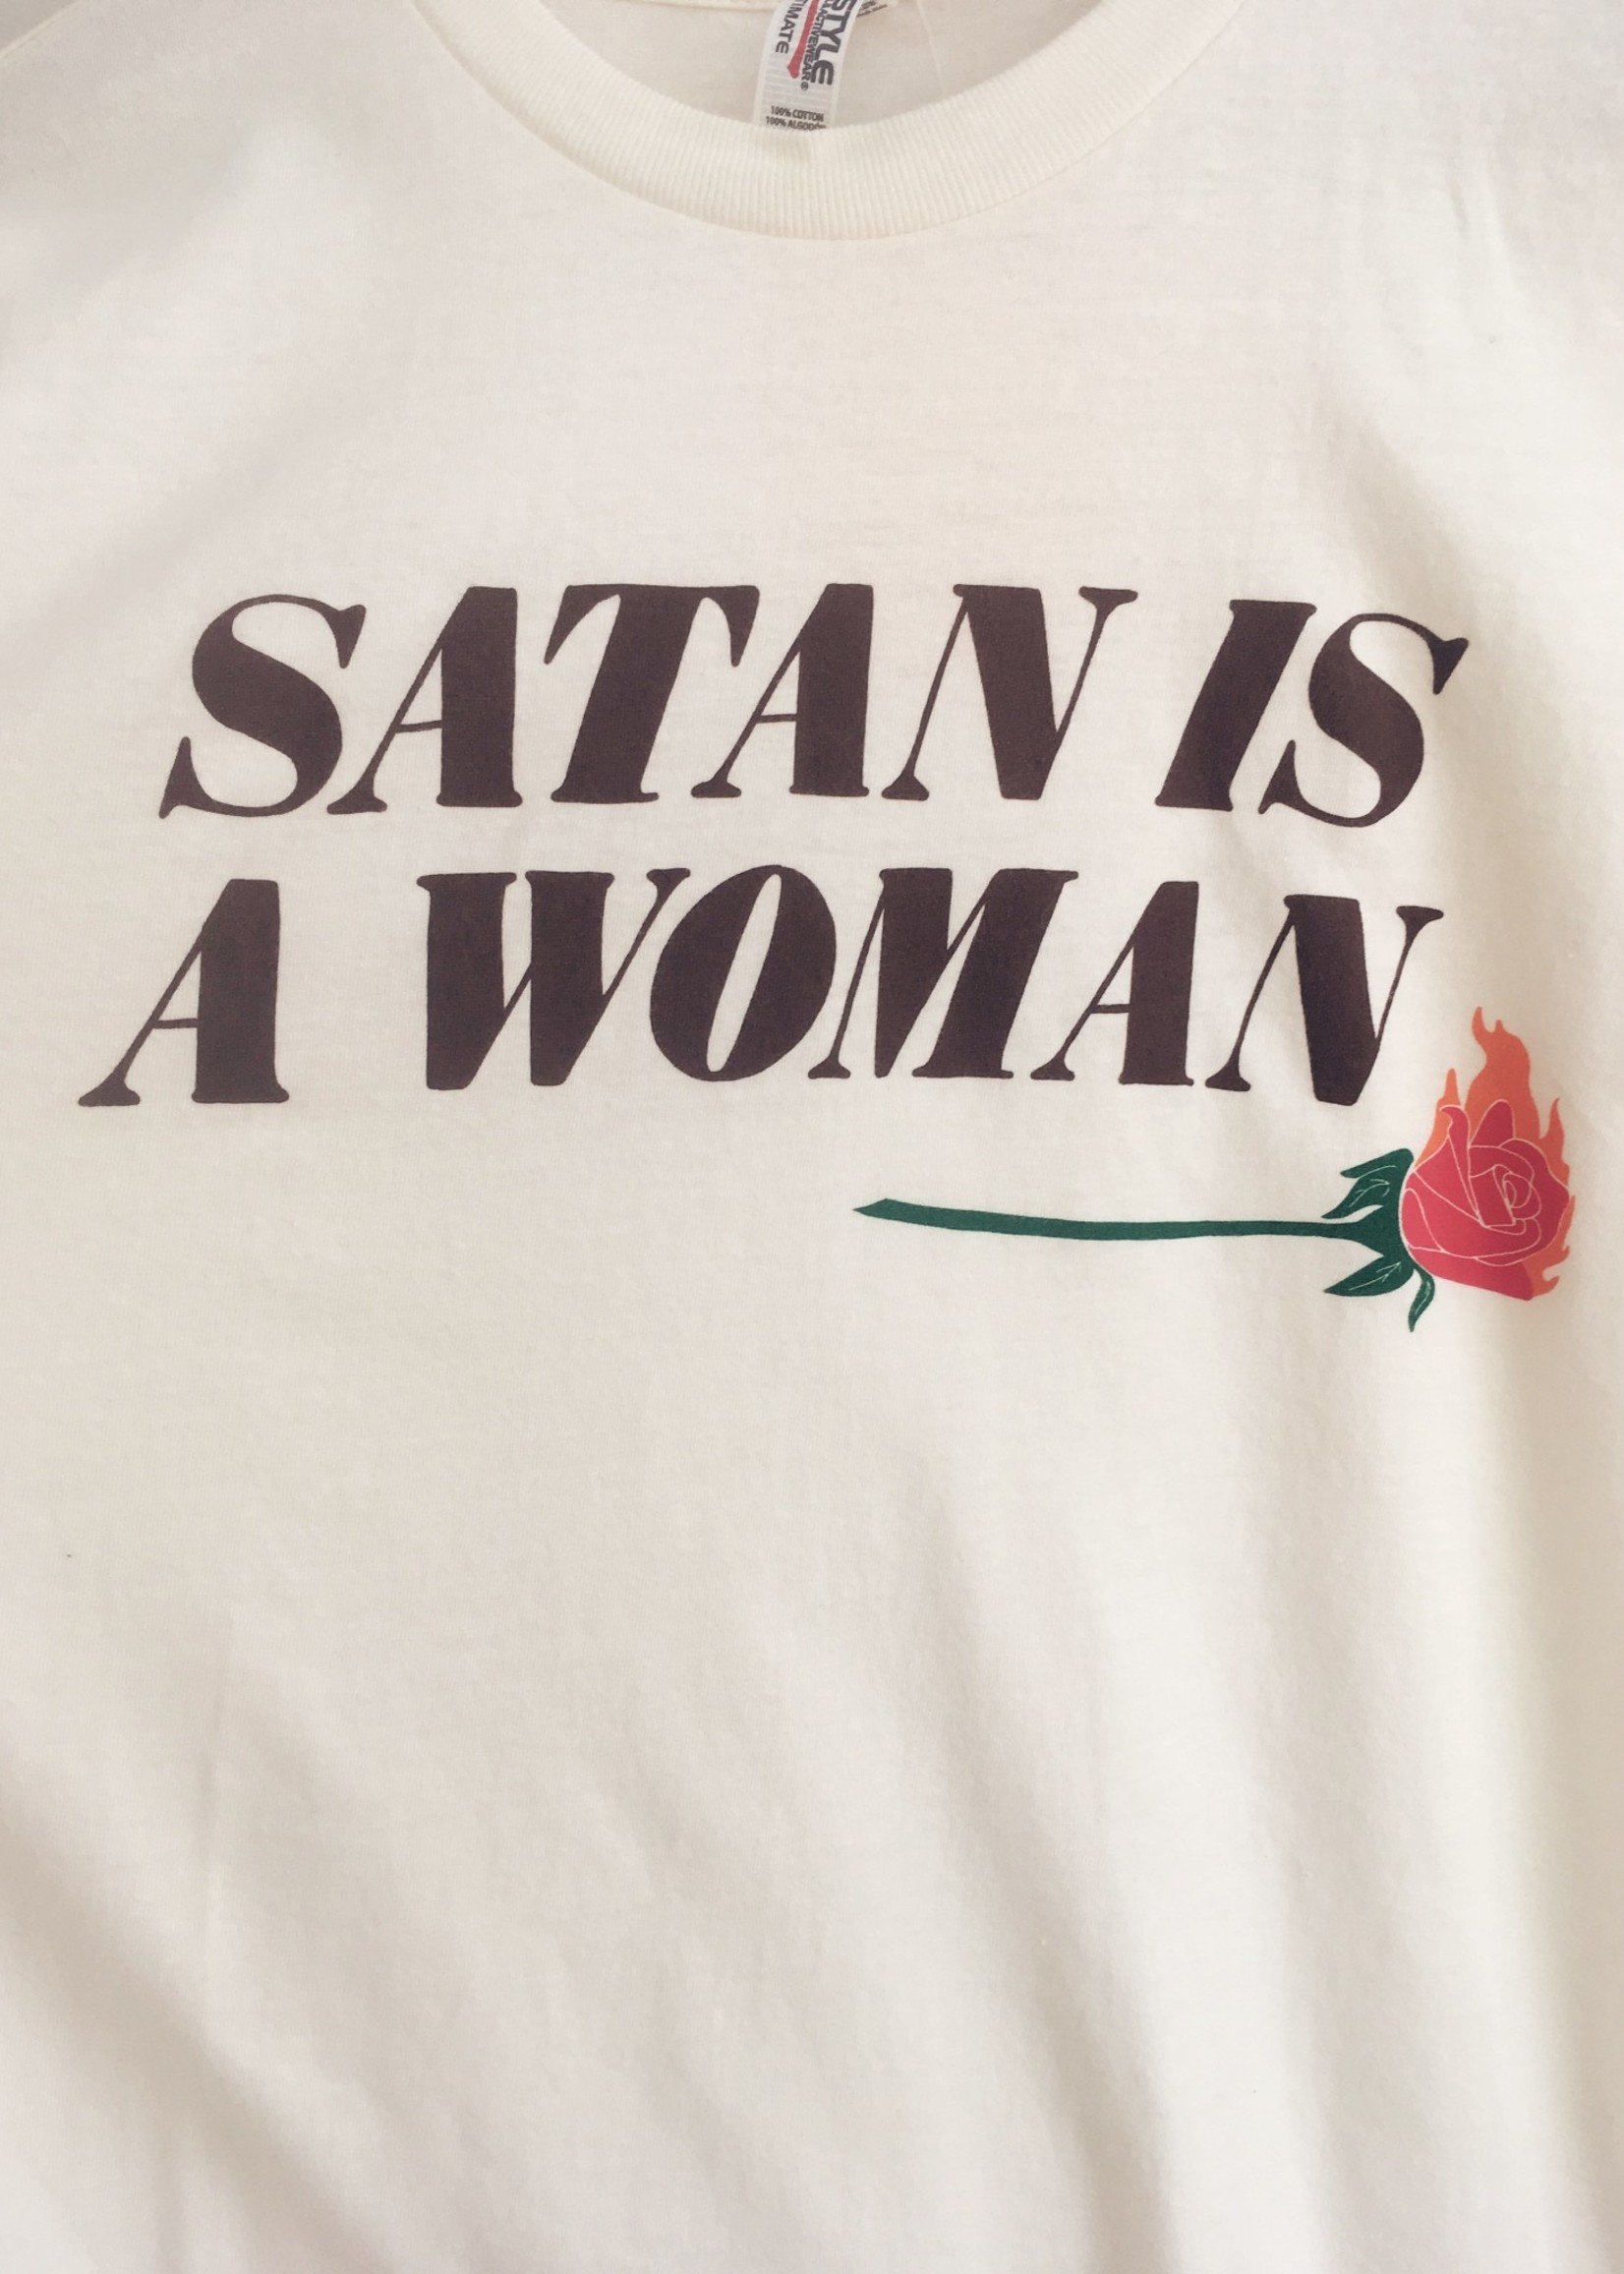 Rosehound Apparel T-shirt "Satan Is A Woman"